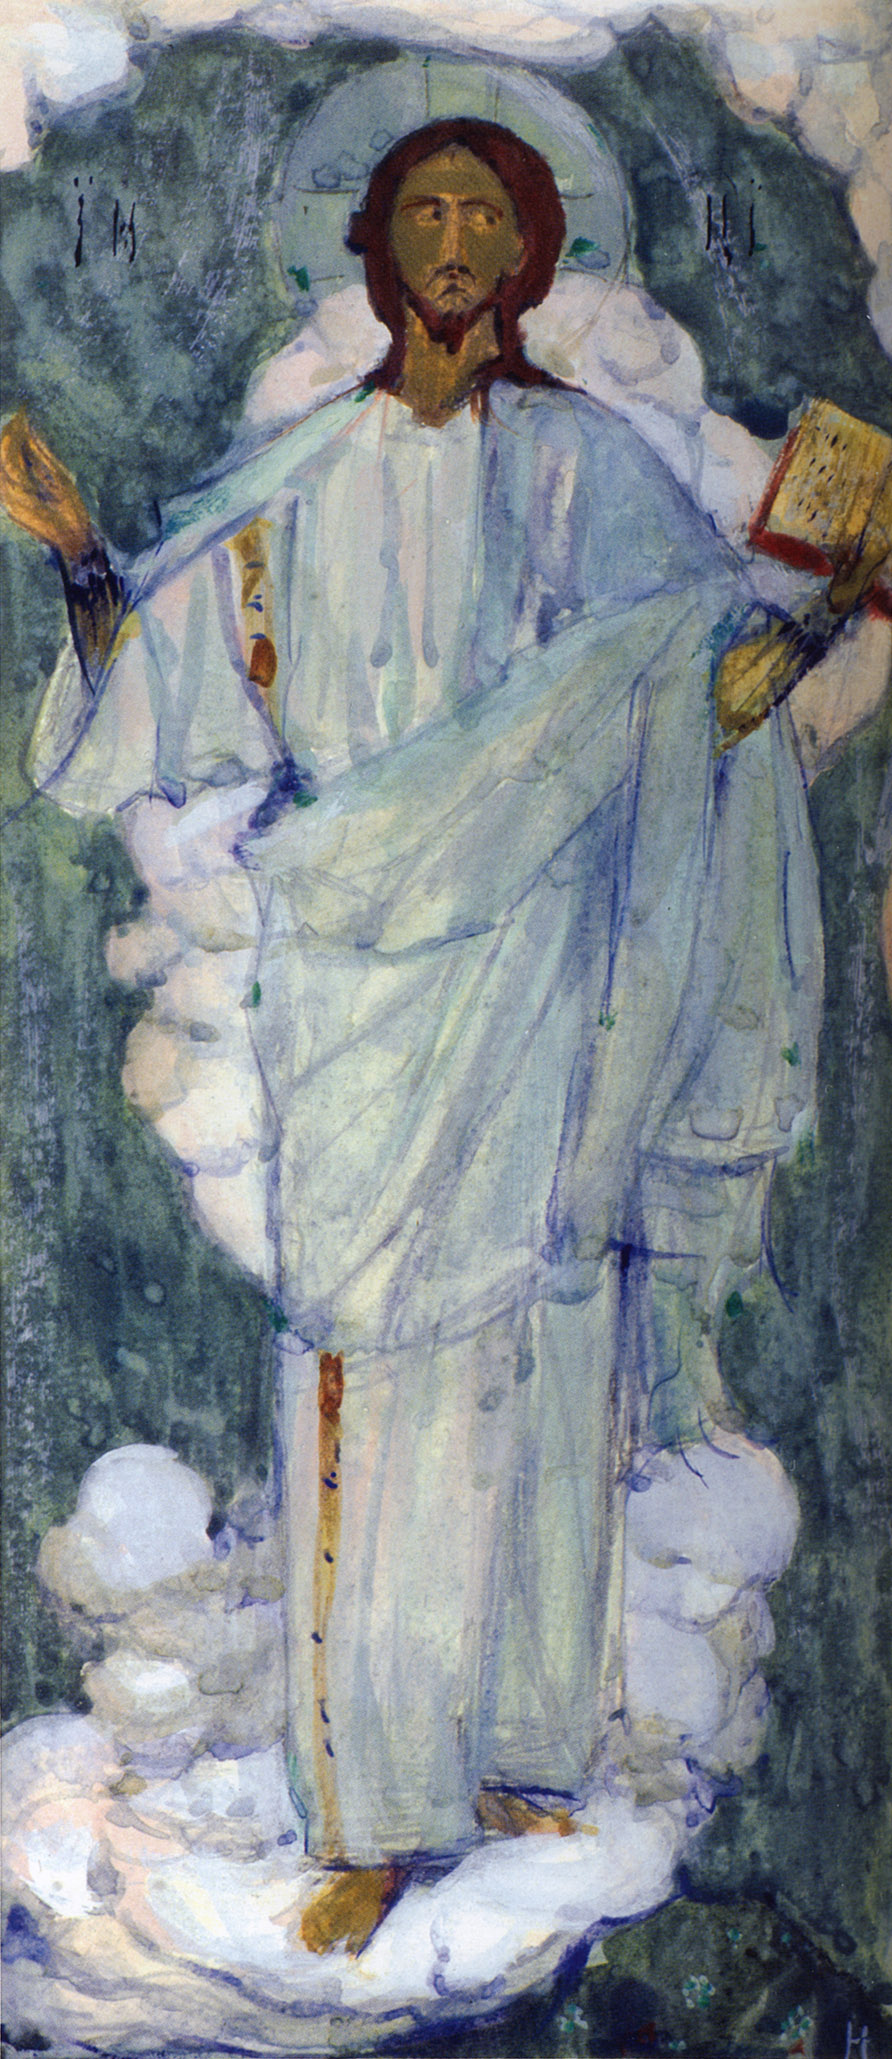 Нестеров М.. Христос. 1913-1914